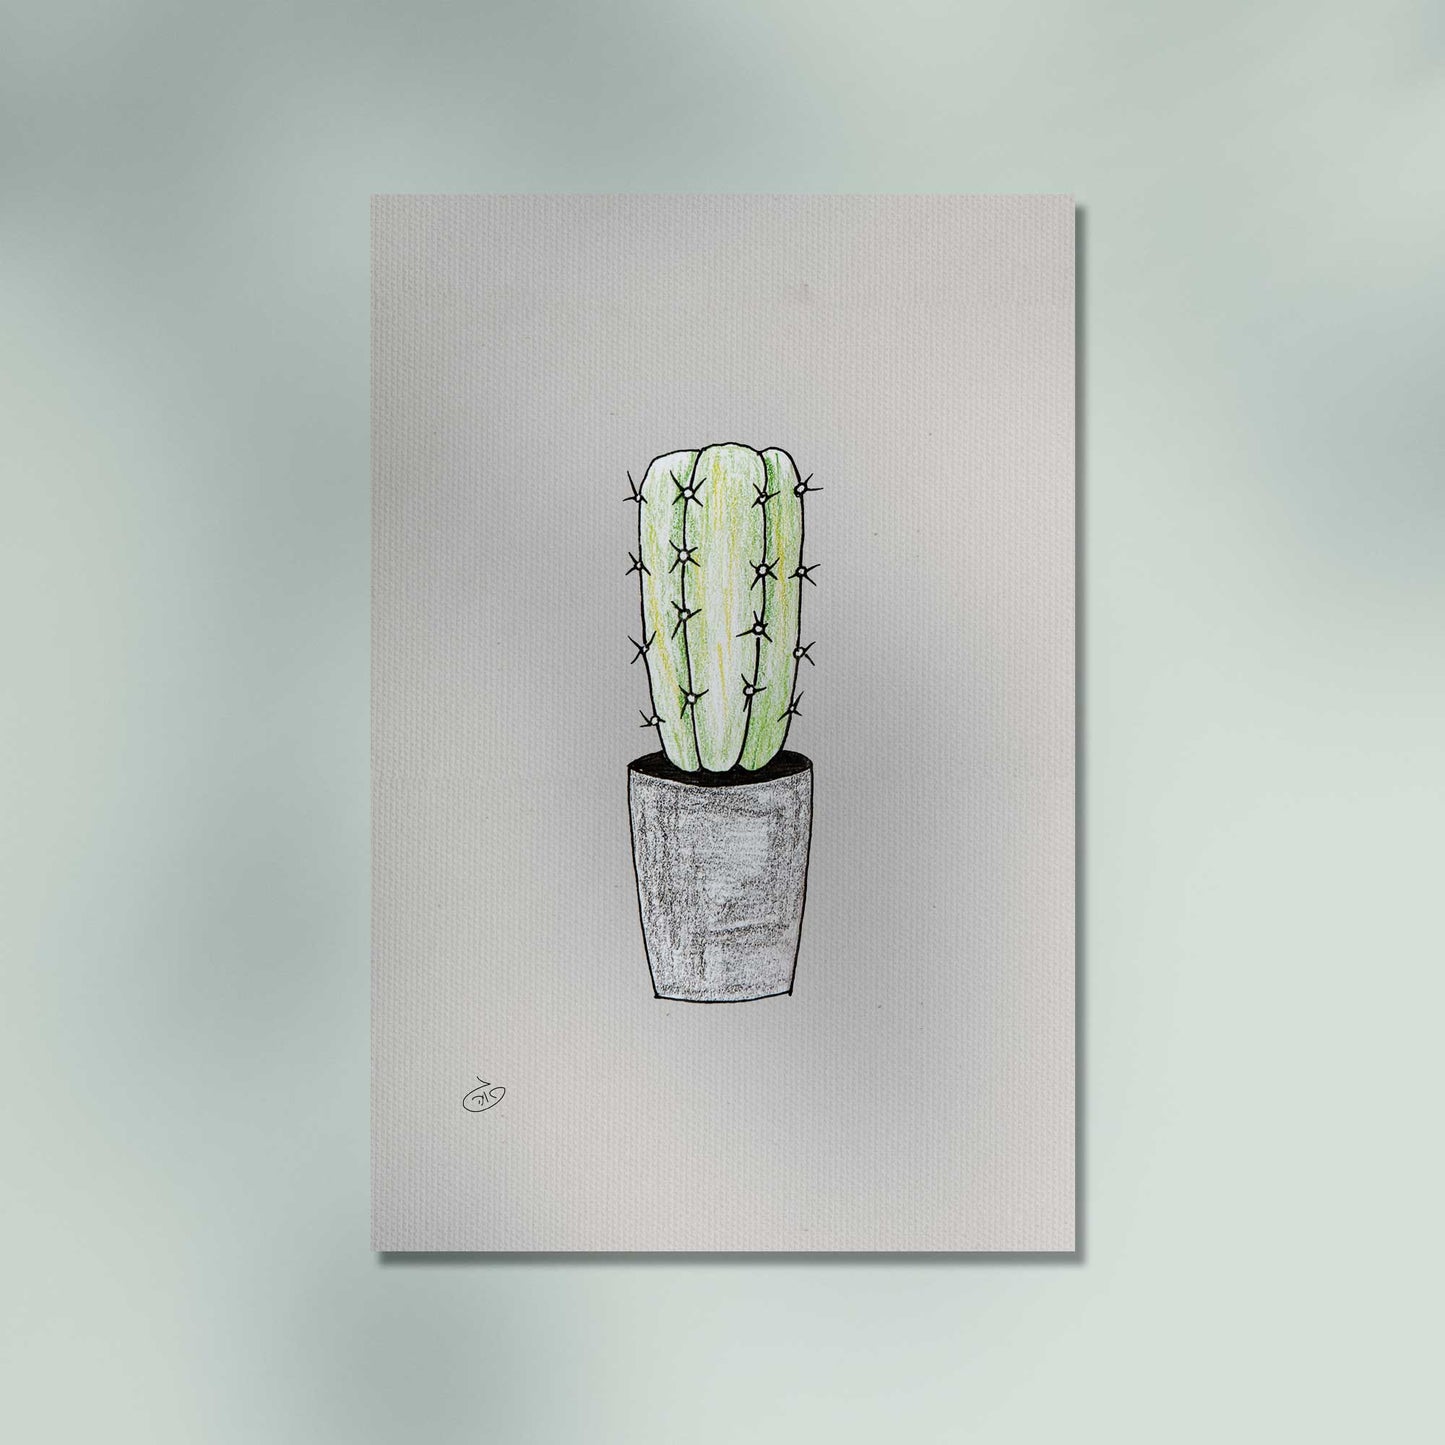 פוסטר Succulent Cactus Poster ציור מקורי של גאיה המקדם את המודעות לאלימות בין בני זוג בכלל וכלפי נשים בפרט